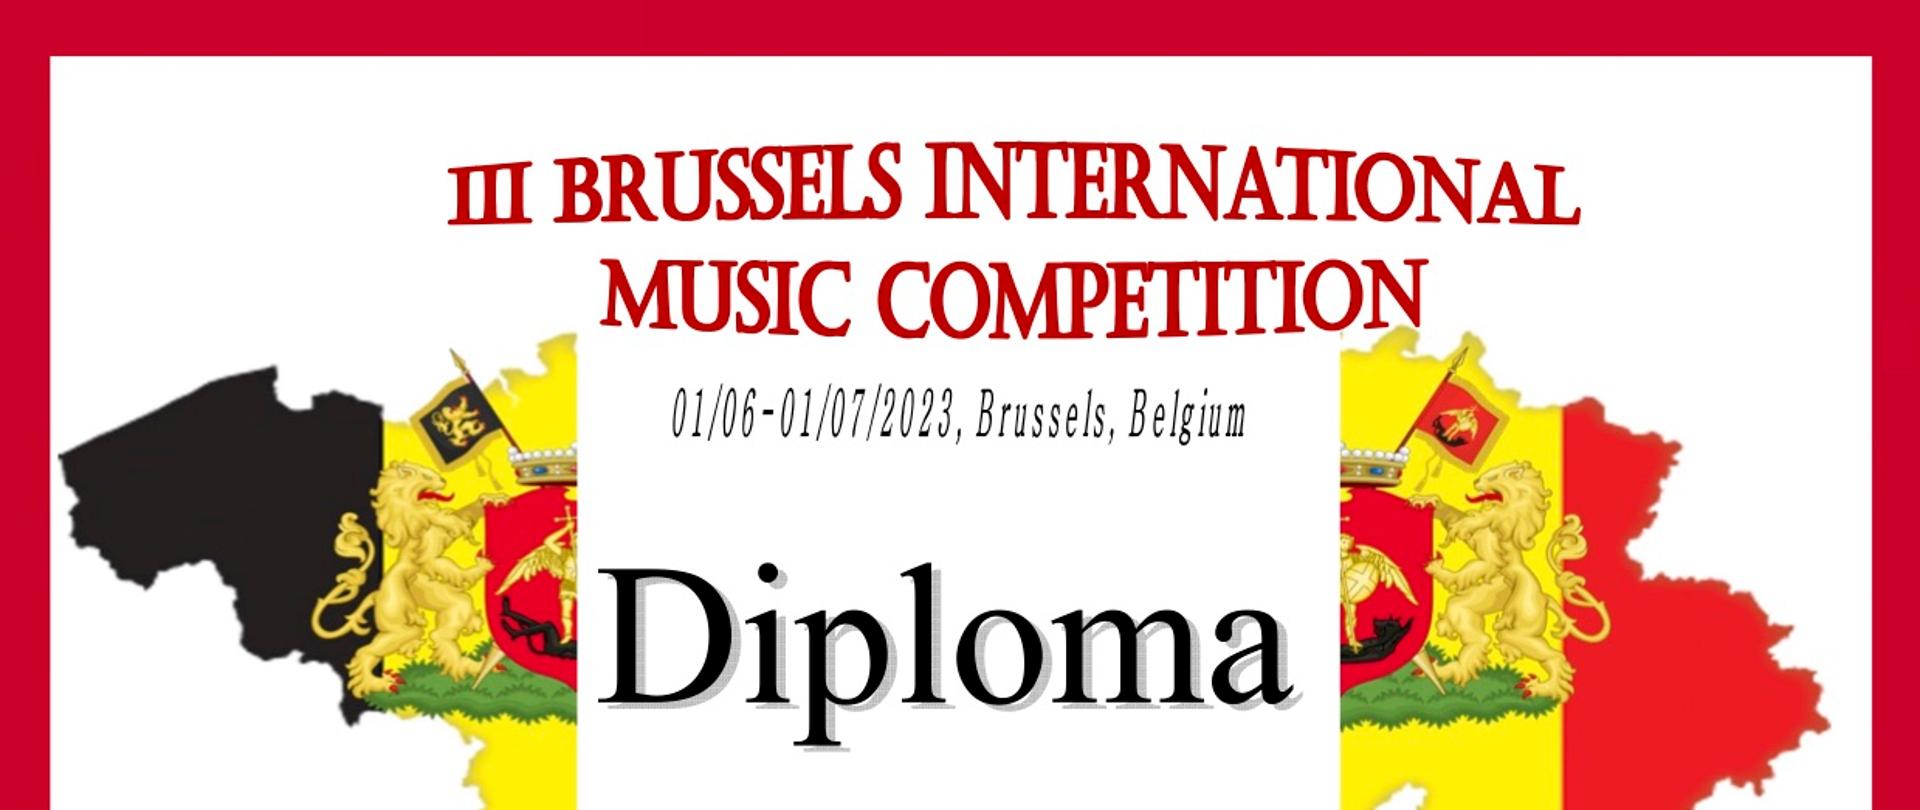 Na białym tle mapa Belgii, w środku napis Diploma II Prize Katarzyna Kurczewska. Poniżej wymienieni jurorzy, na dole ozdobne pieczęcie organizatora konkursu.